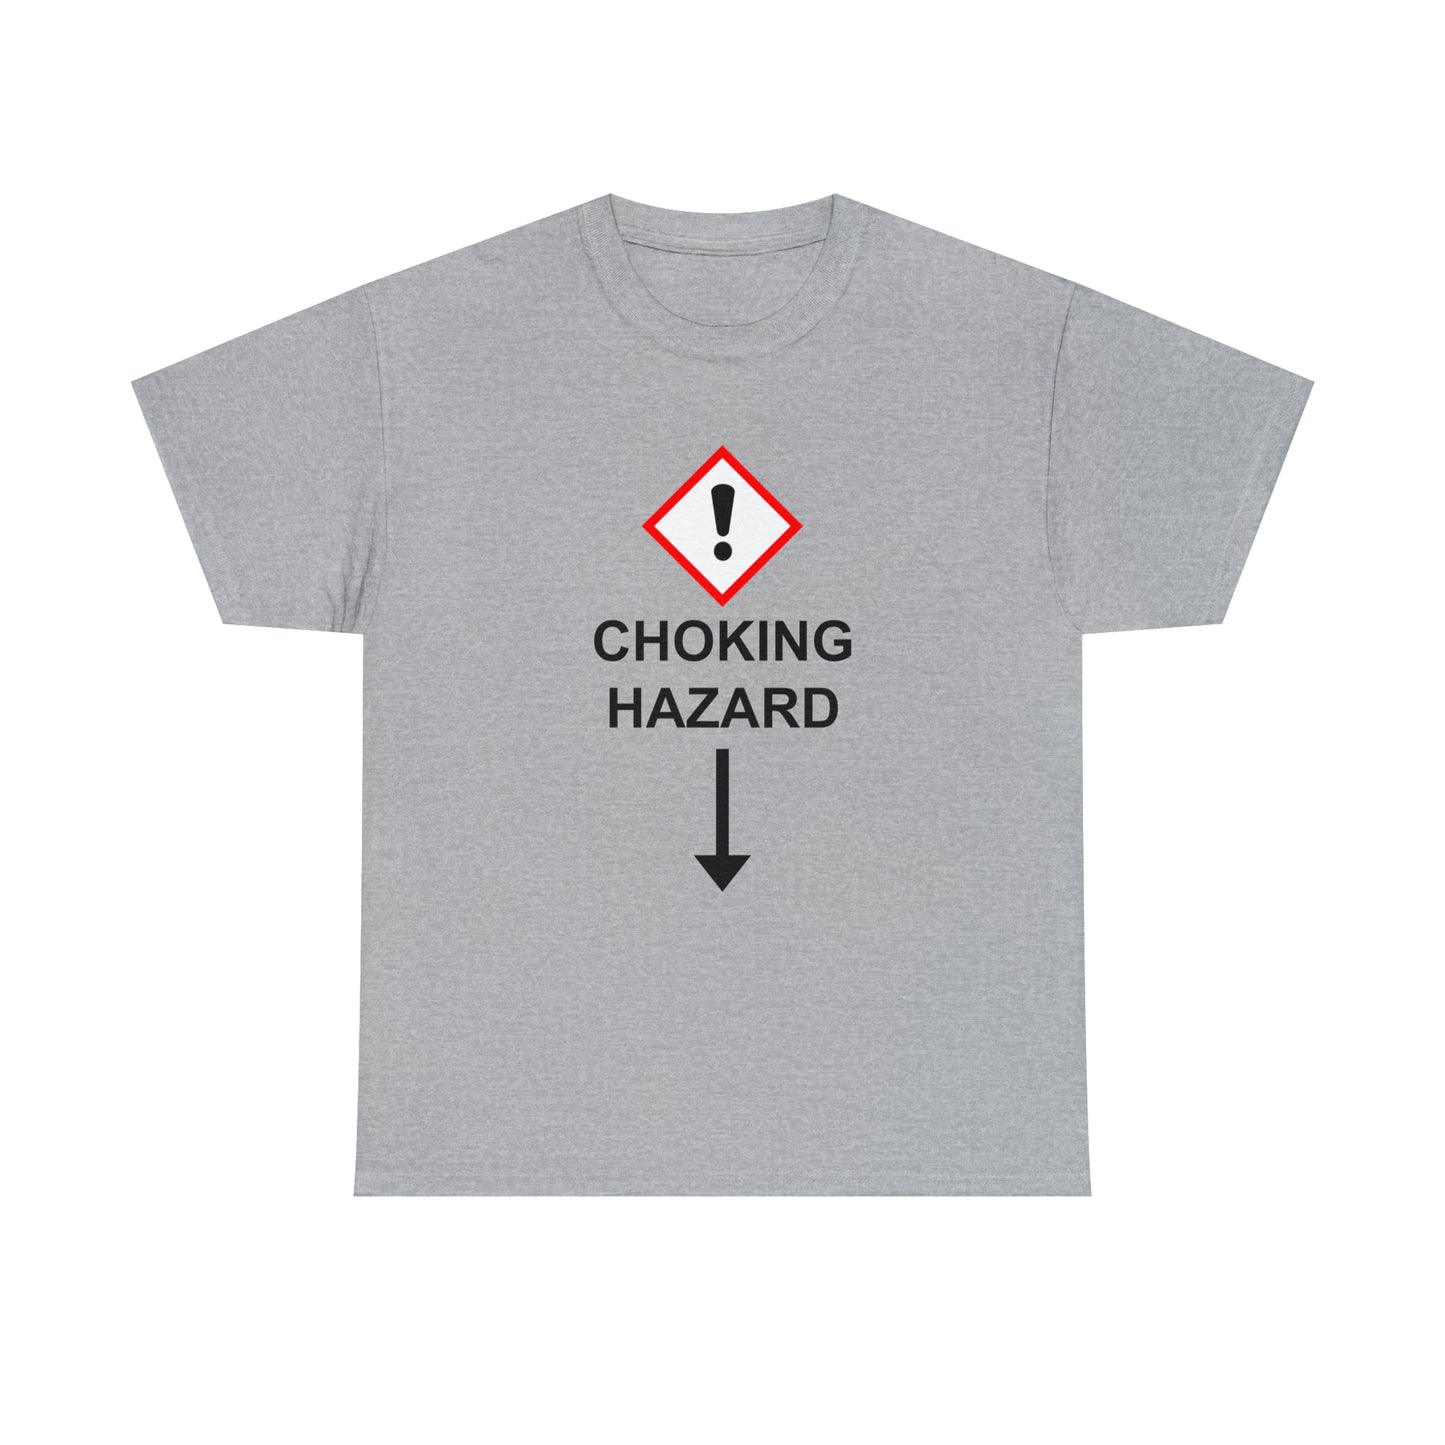 The Safety Hazard™